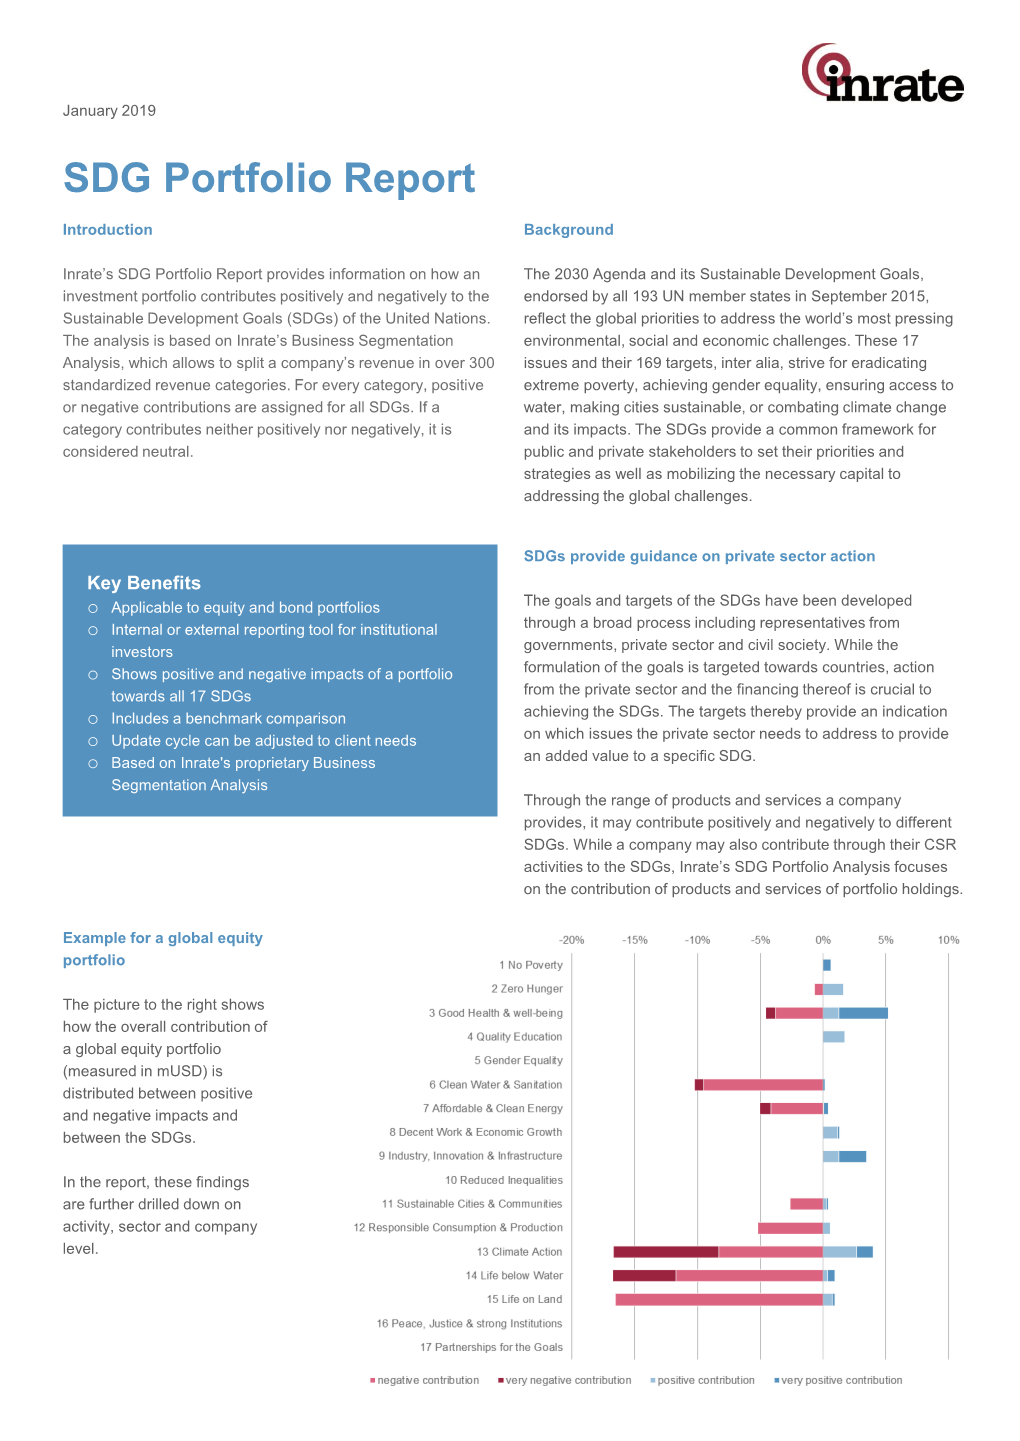 Factsheet SDG Portfolio Analysis